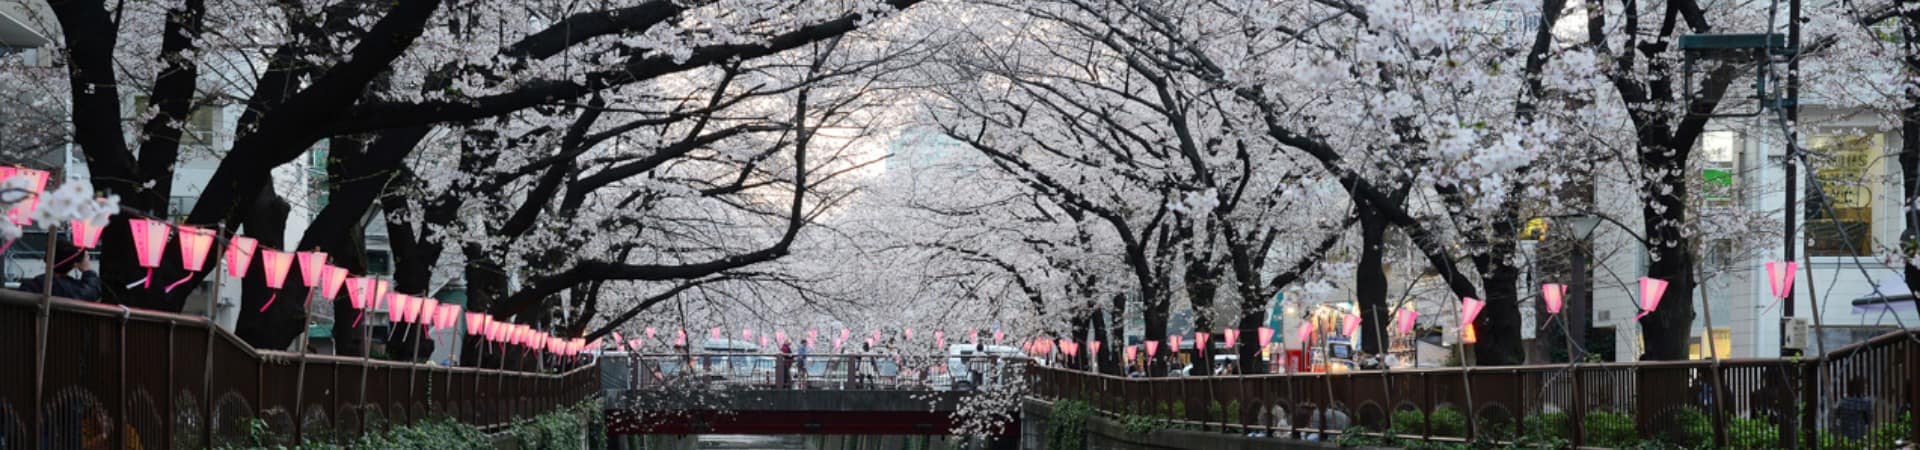 Cerejeira sakura Rio Meguro, Tóquio, Japão